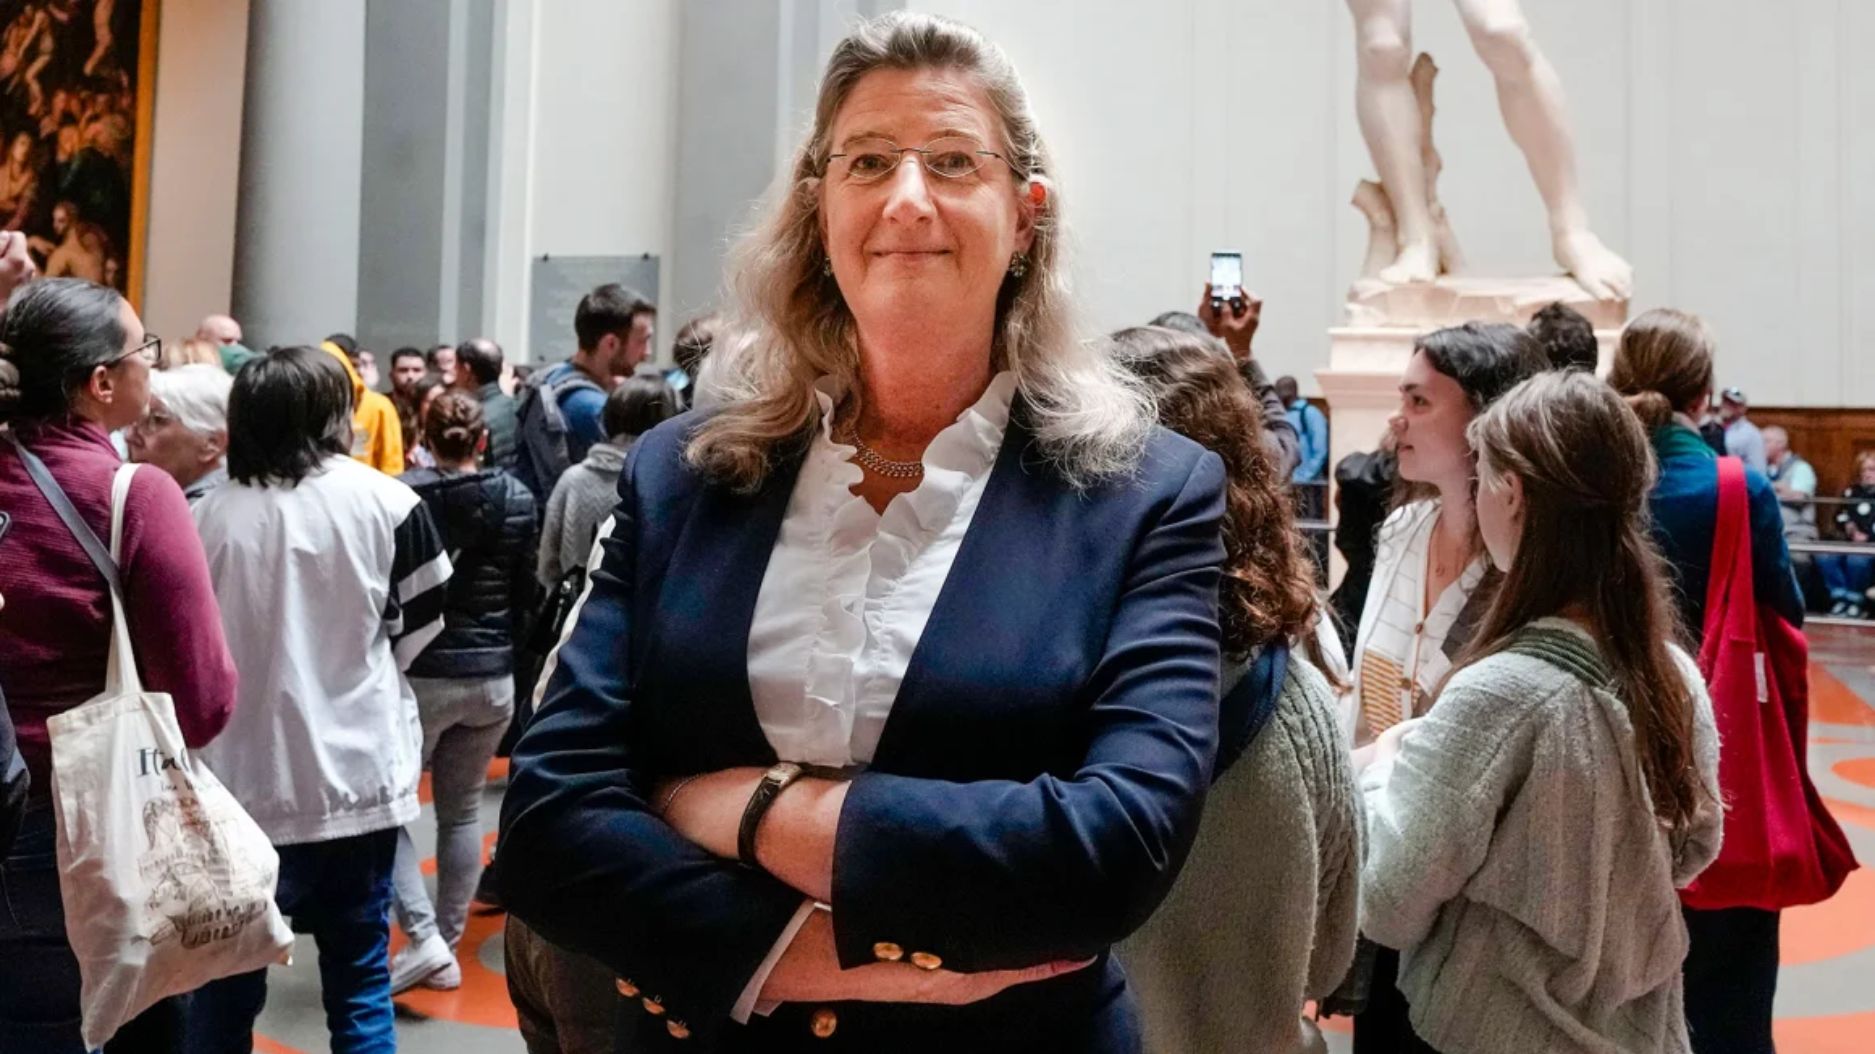 El turismo masivo convirtió a Florencia en "prostituta", asegura la directora de un museo y desata la indignación